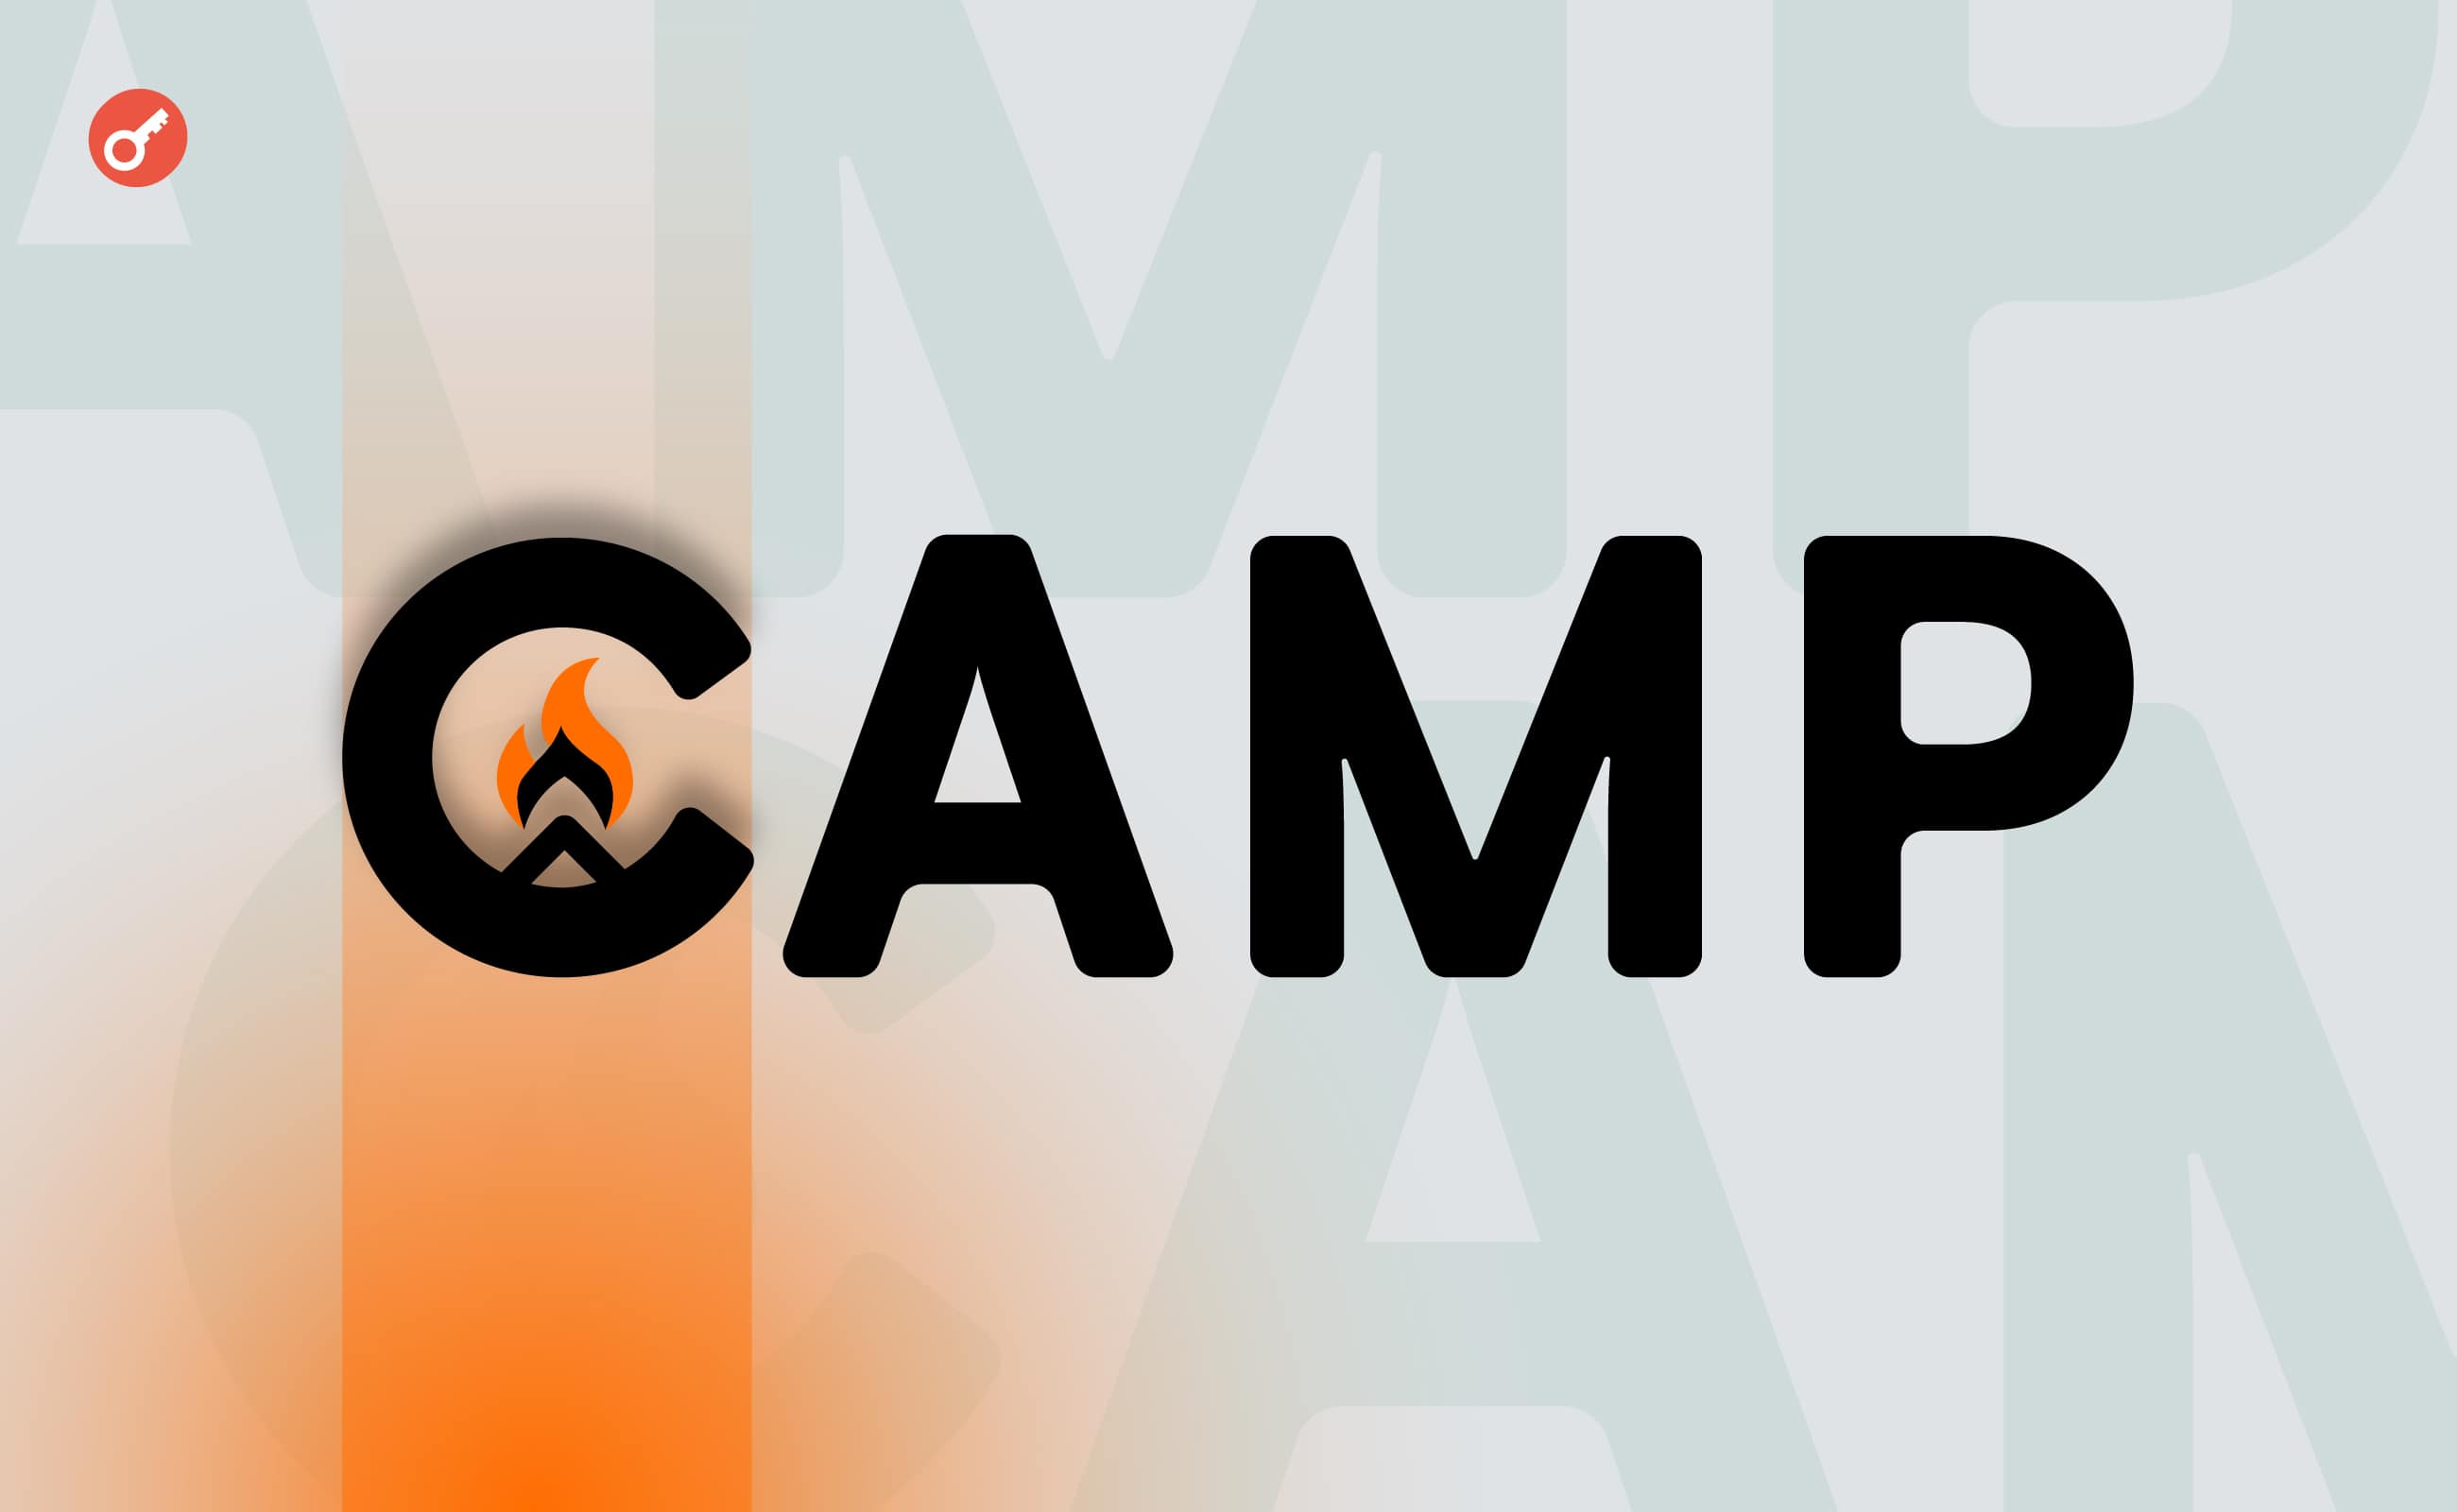 Команда Camp Network отчиталась о завершении посевного раунда на $4 млн. Заглавный коллаж новости.